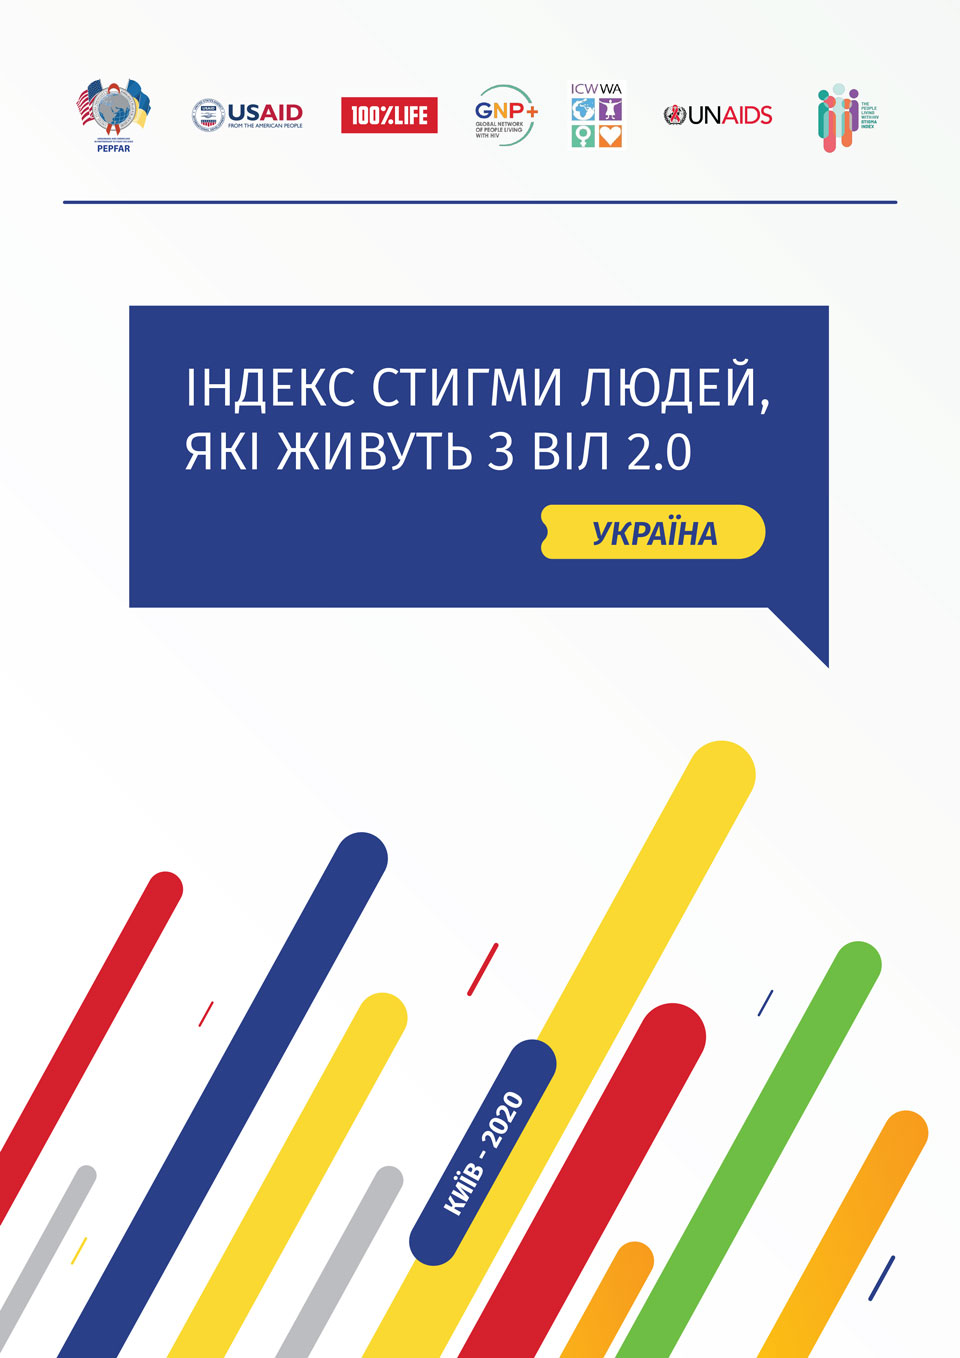 PLHIV Stigma Index 2.0 in Ukraine